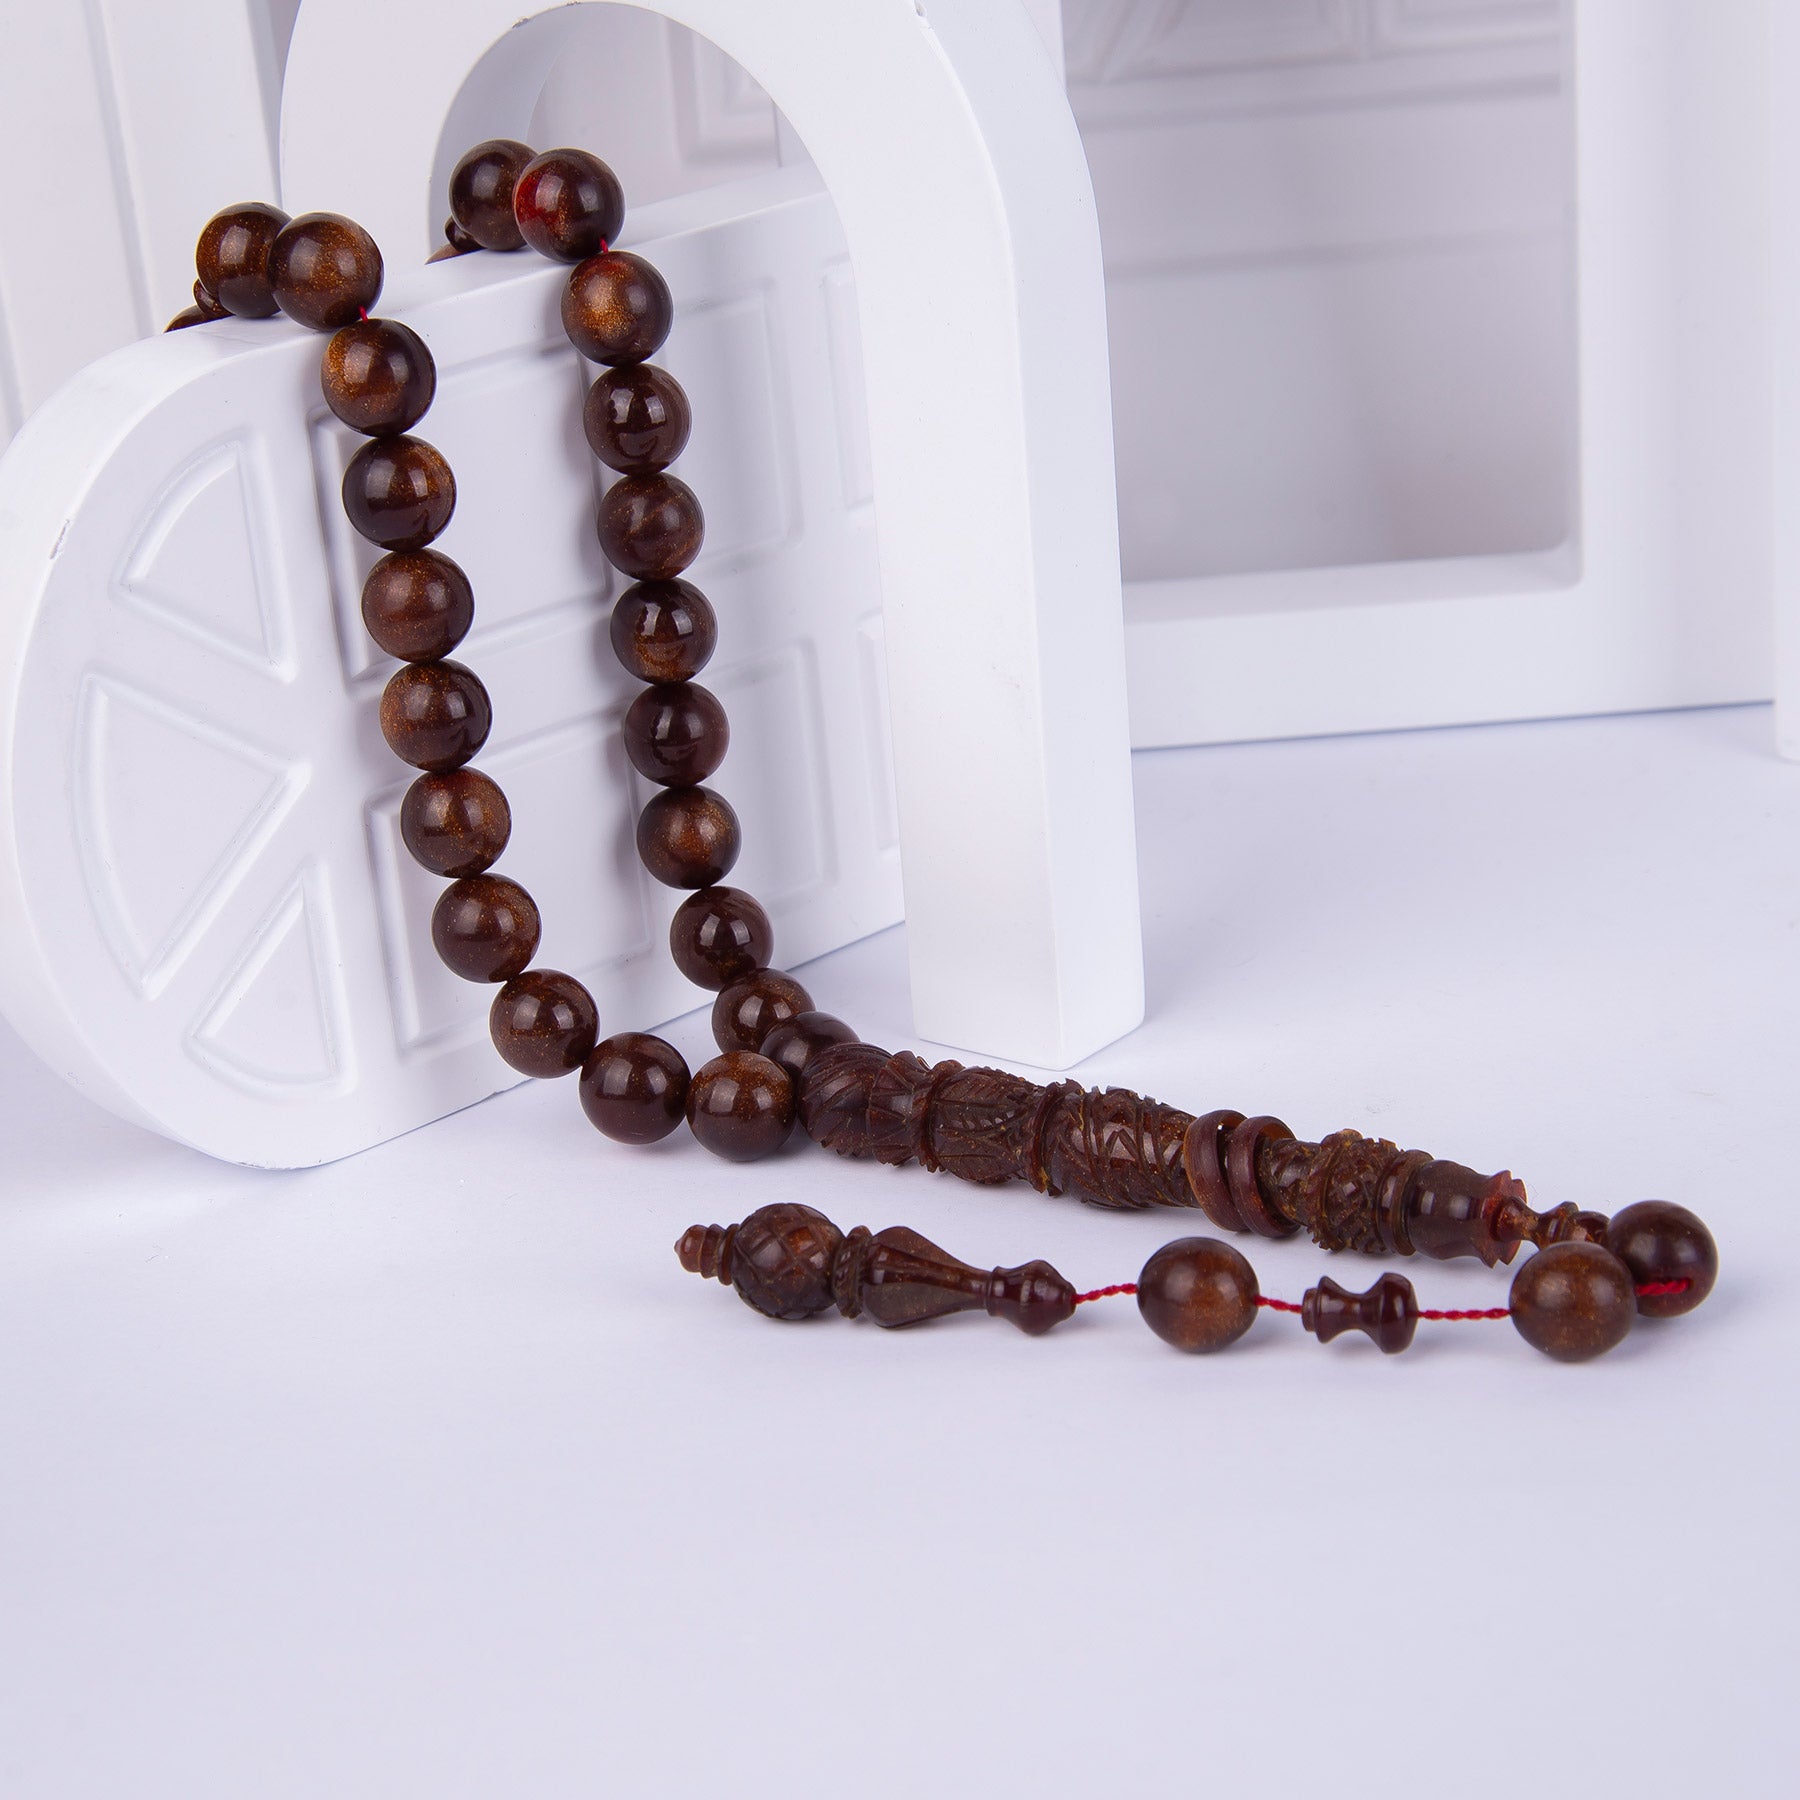 Ve Tesbih Pressed Amber Prayer Beads Large Size 2